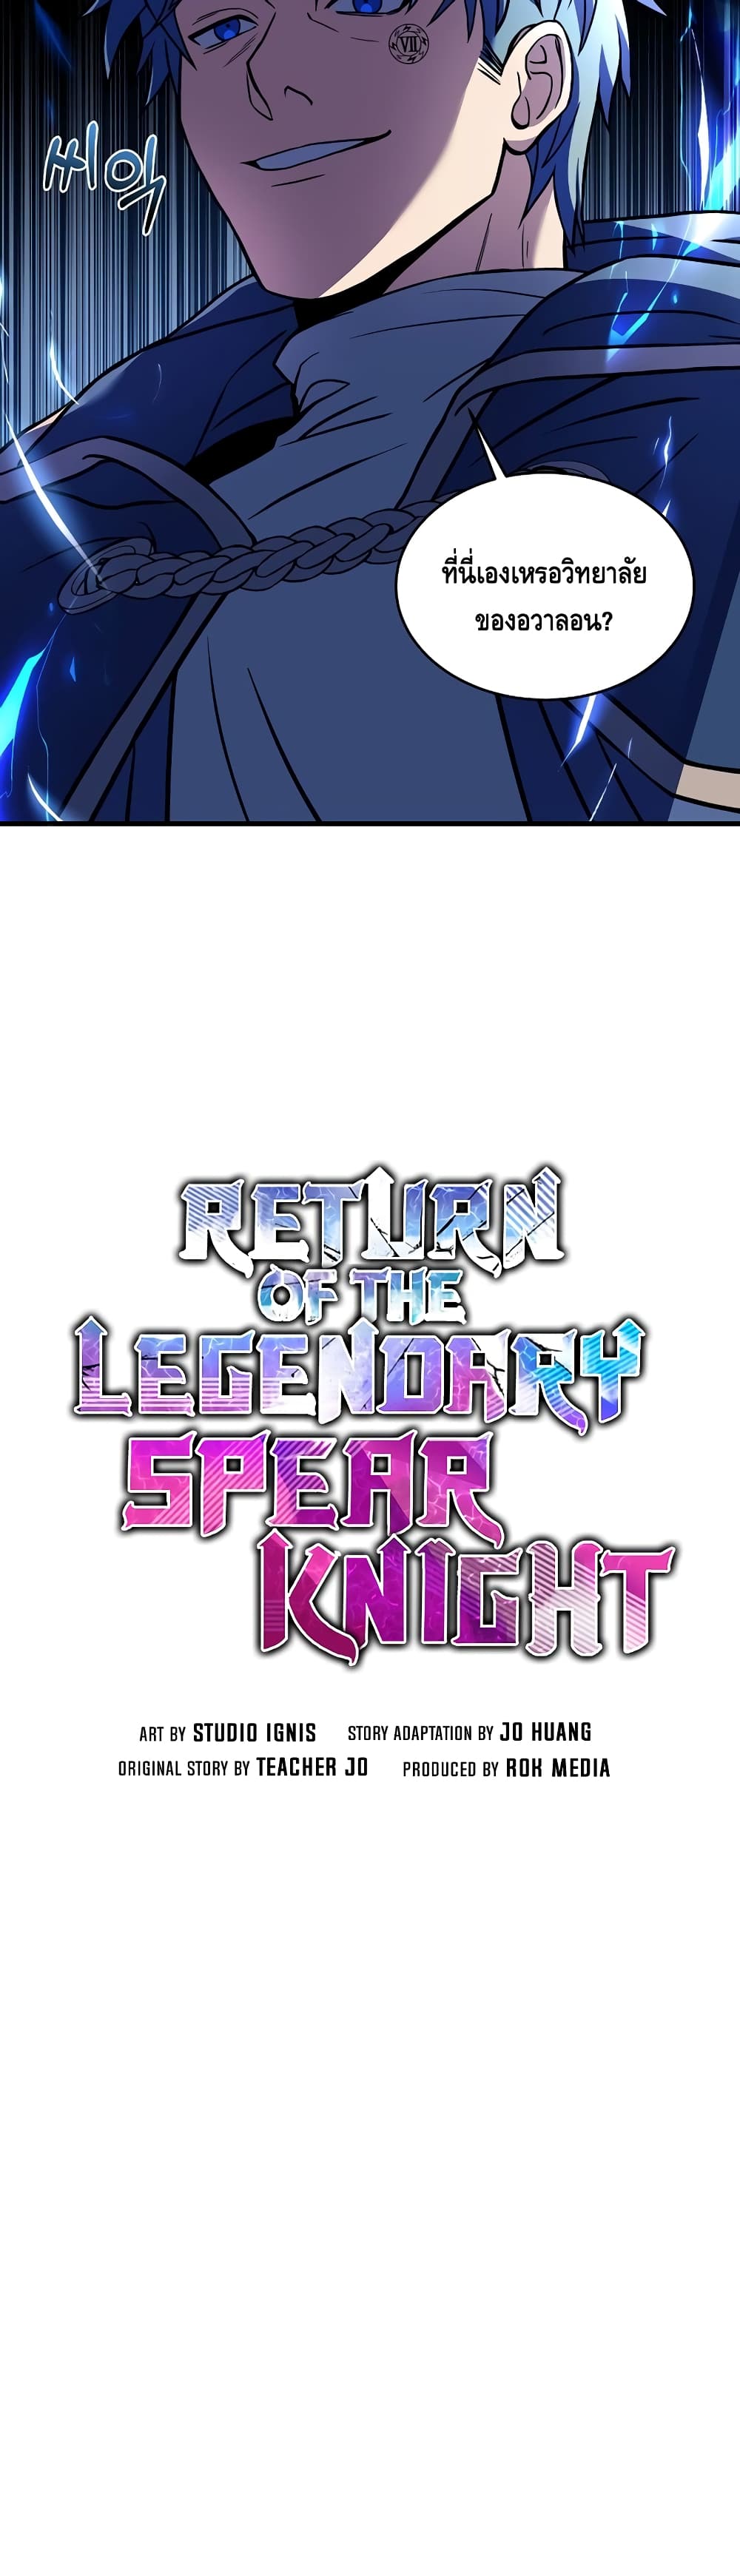 Return of the Legendary Spear Knight 40-40